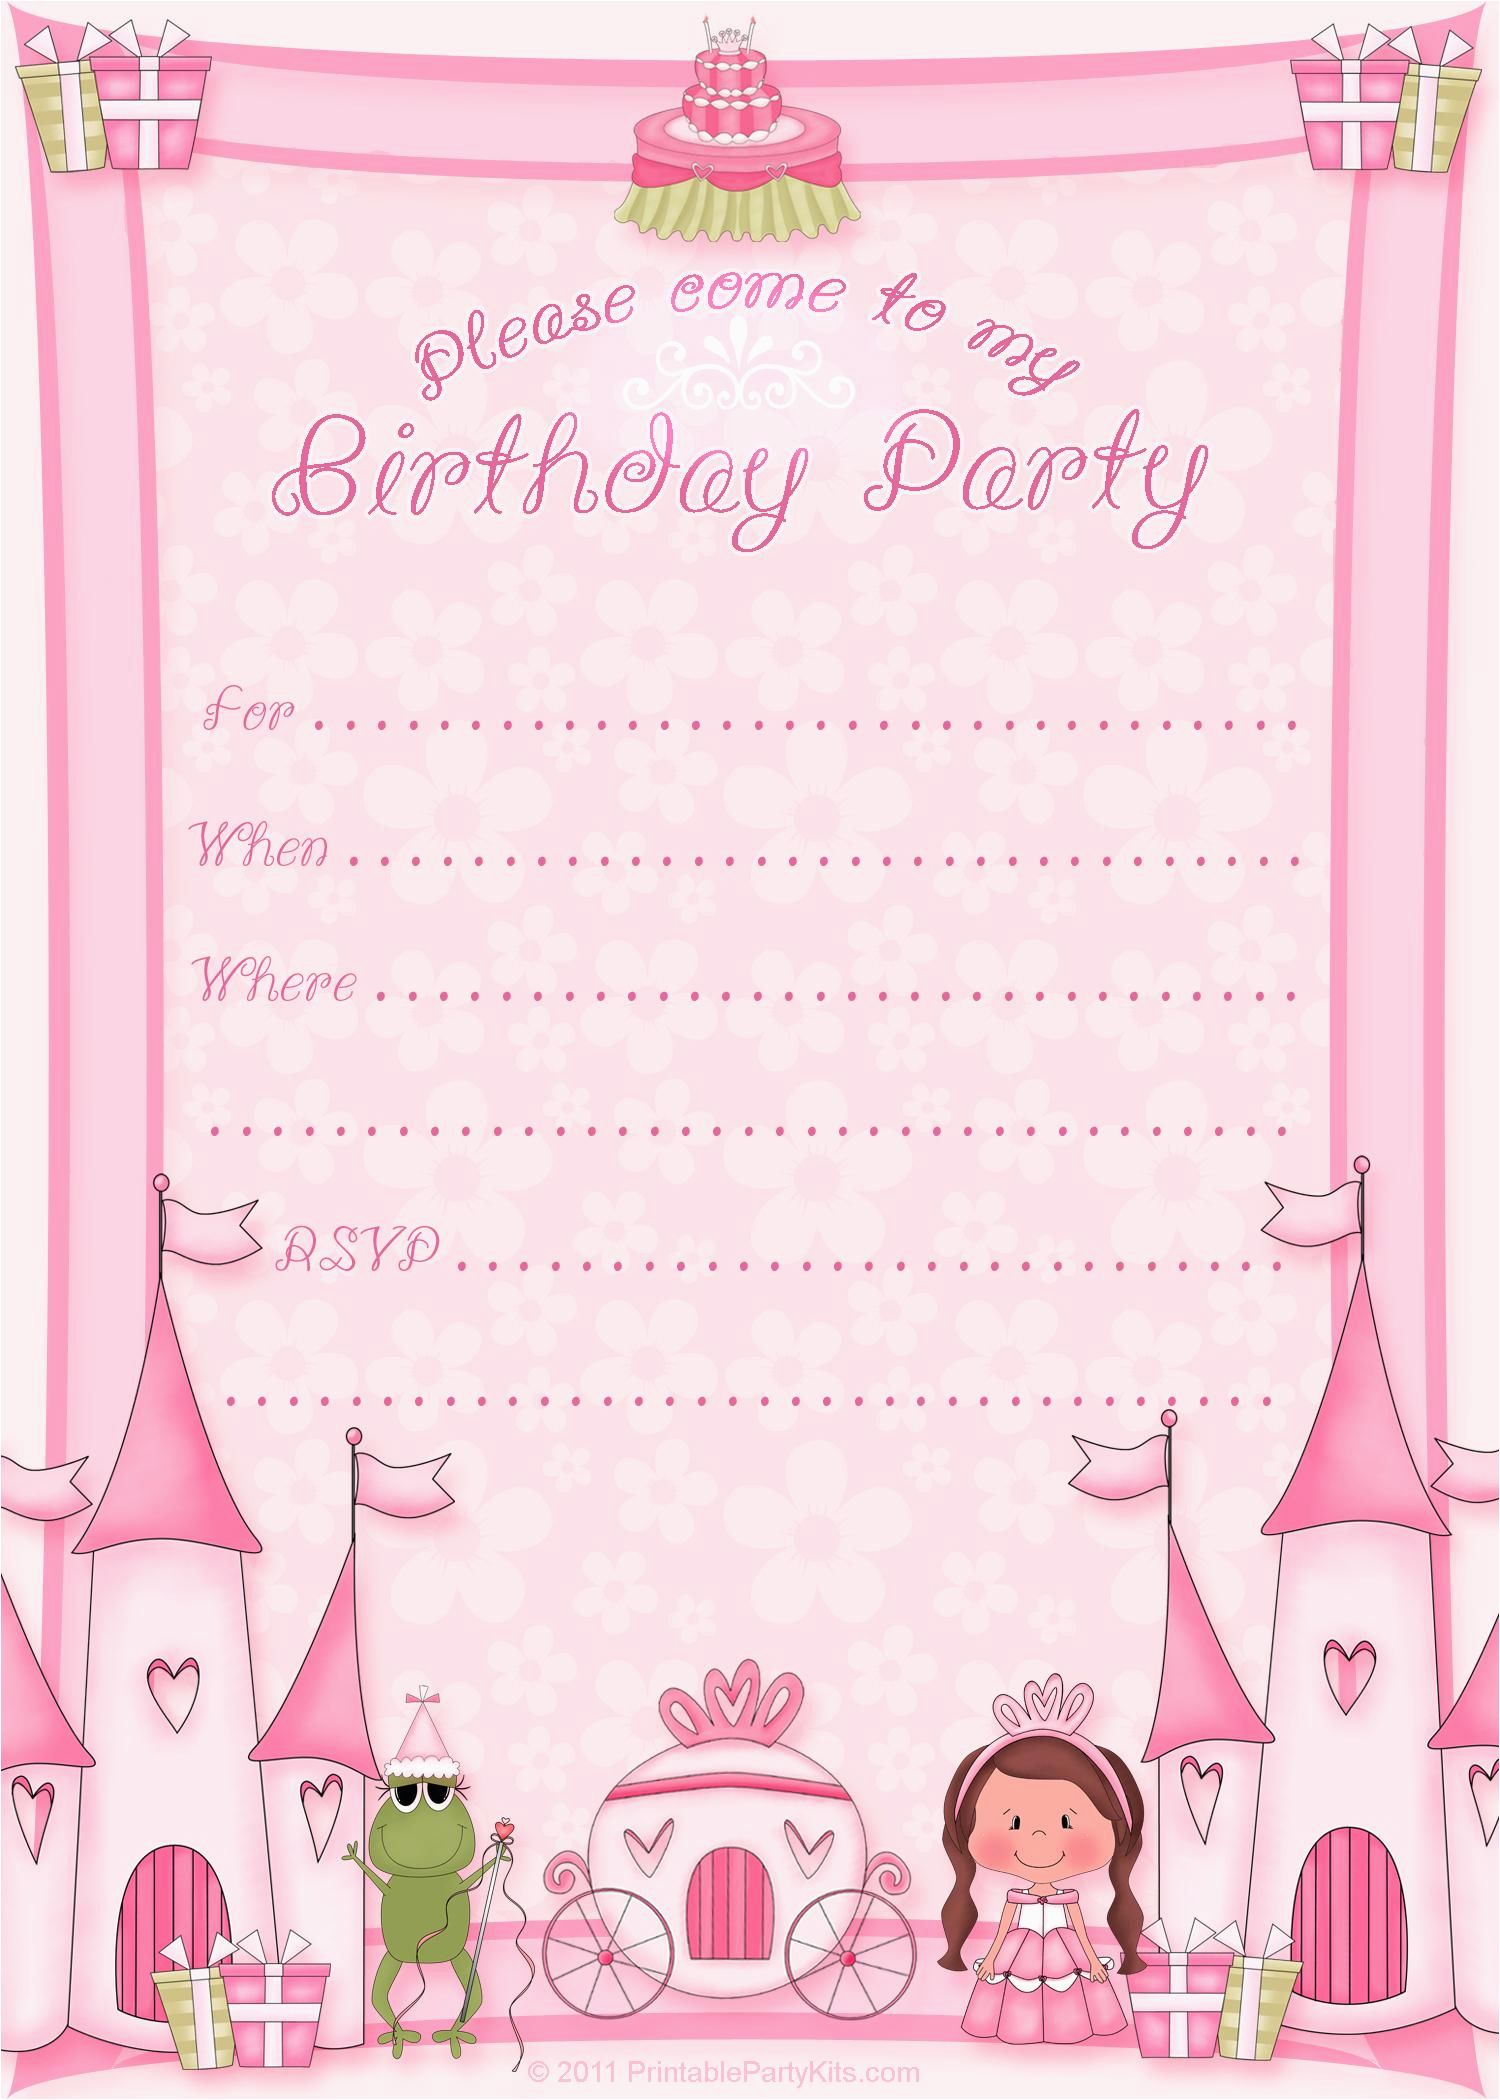 free-online-birthday-invitations-maker-birthdaybuzz